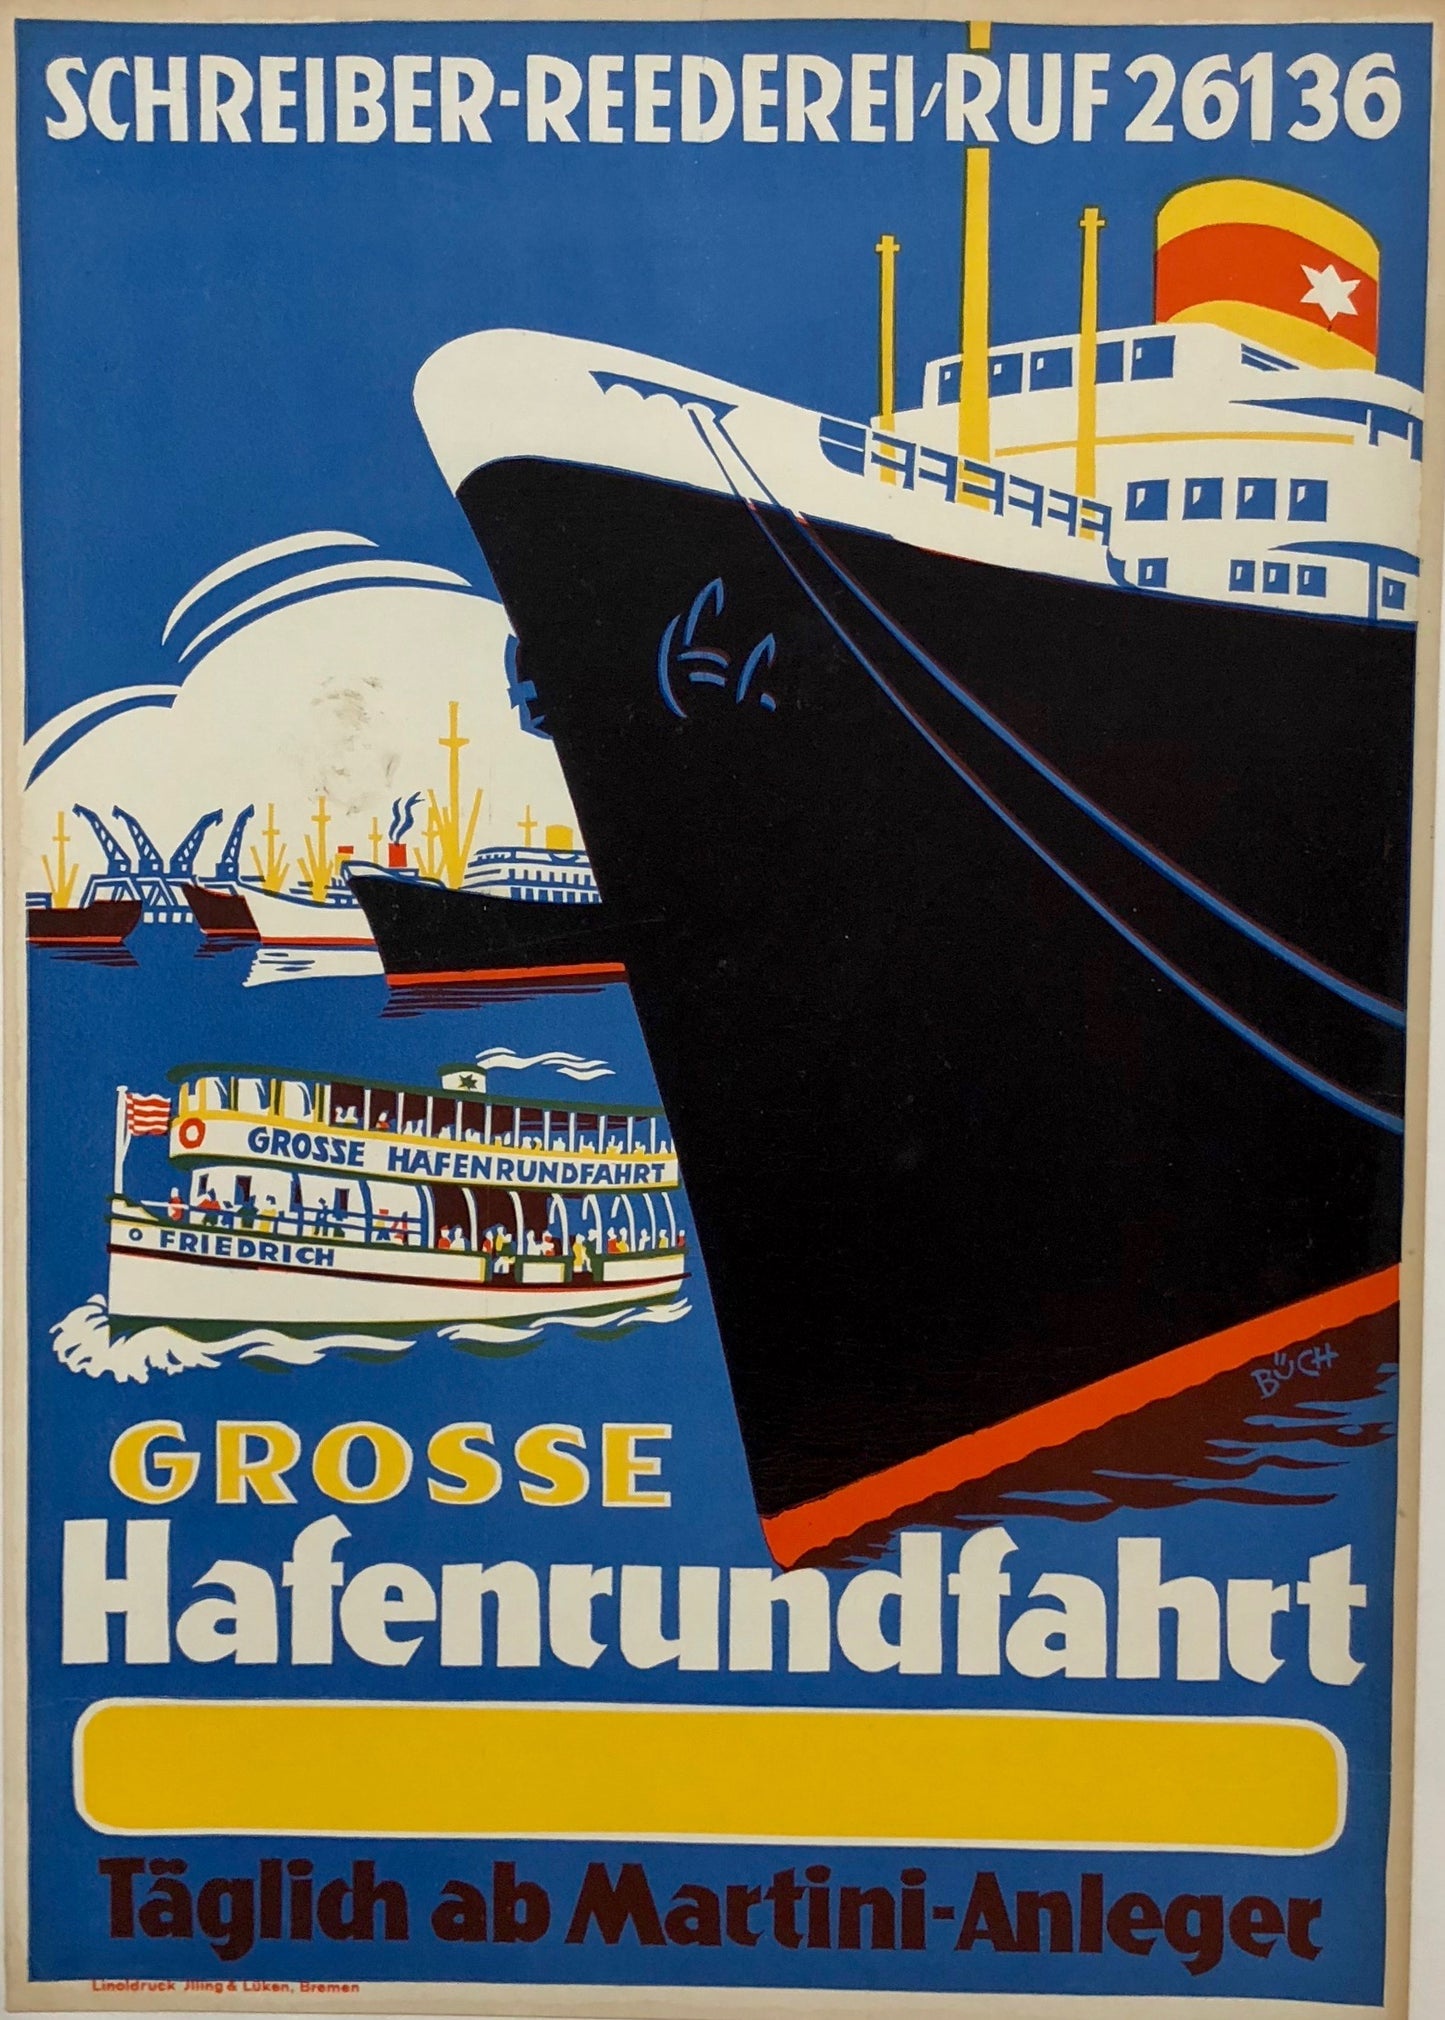 Grosse Hafenrundefahrt by Büch